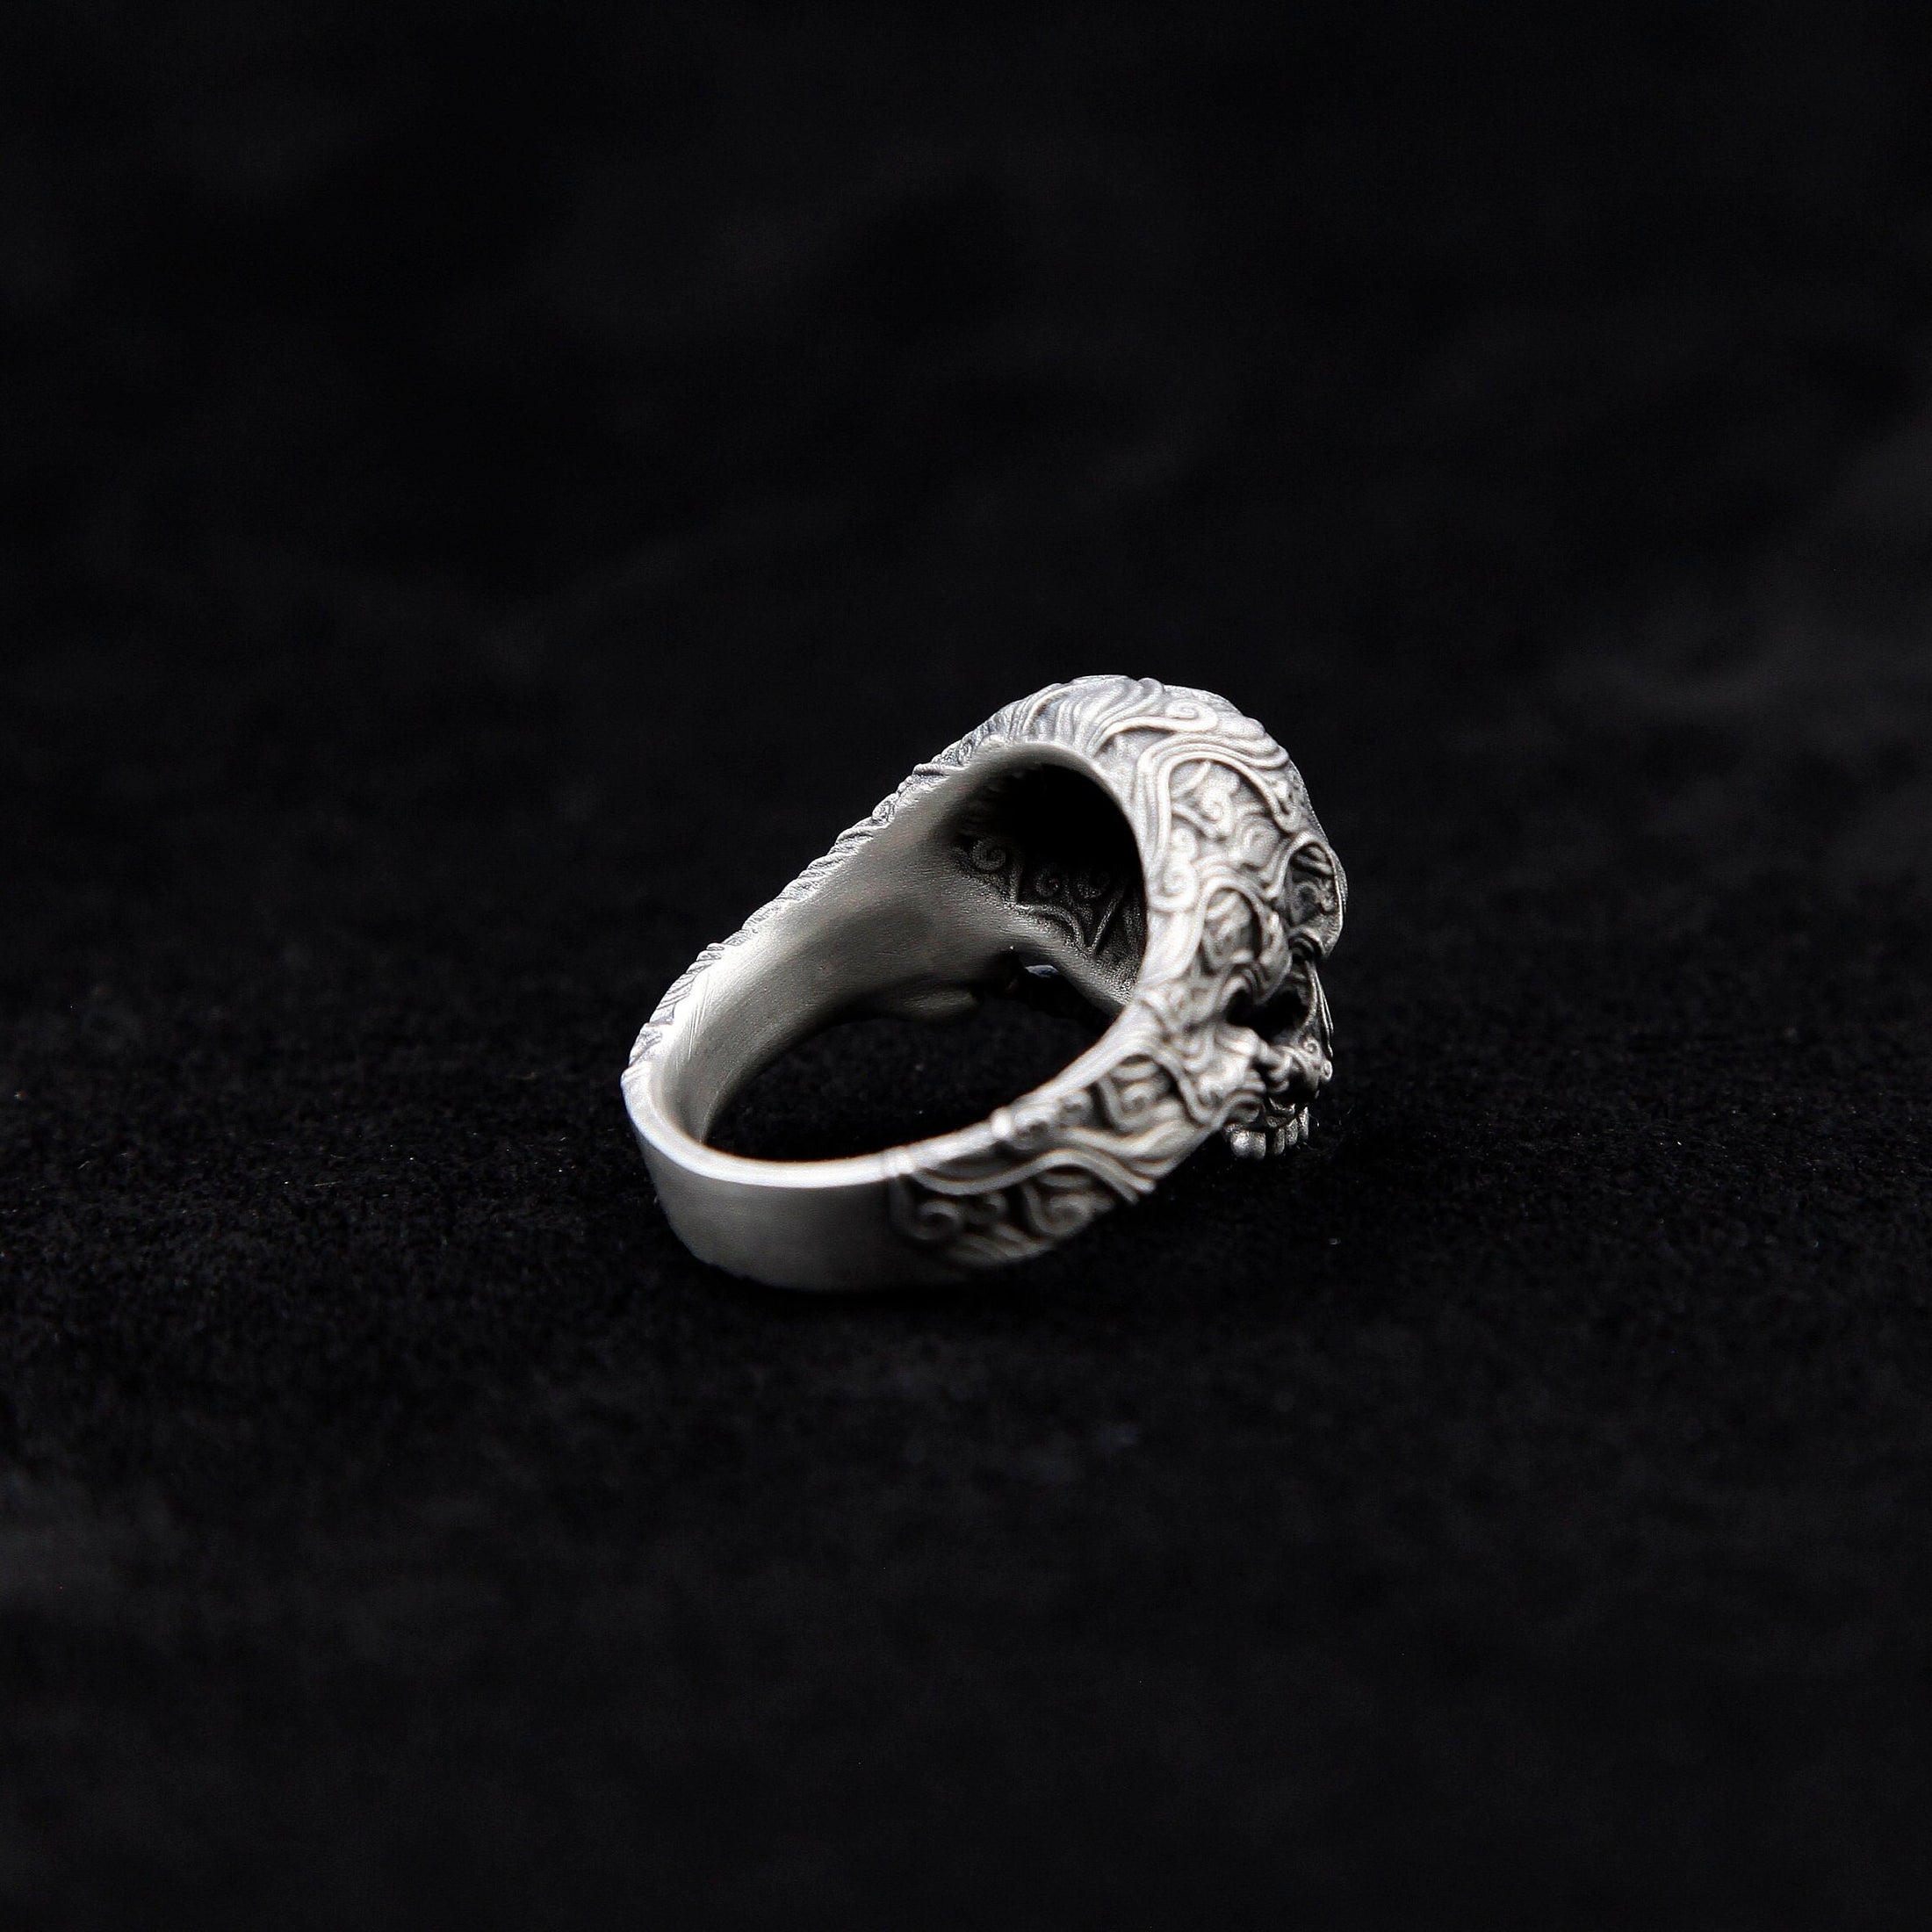 Silver Skull Rings For Mens Signet Skull Ring Unique Gift For Man Biker Skull Ring Silver Pinky Skull Ring Silver Gothic Ring For Men